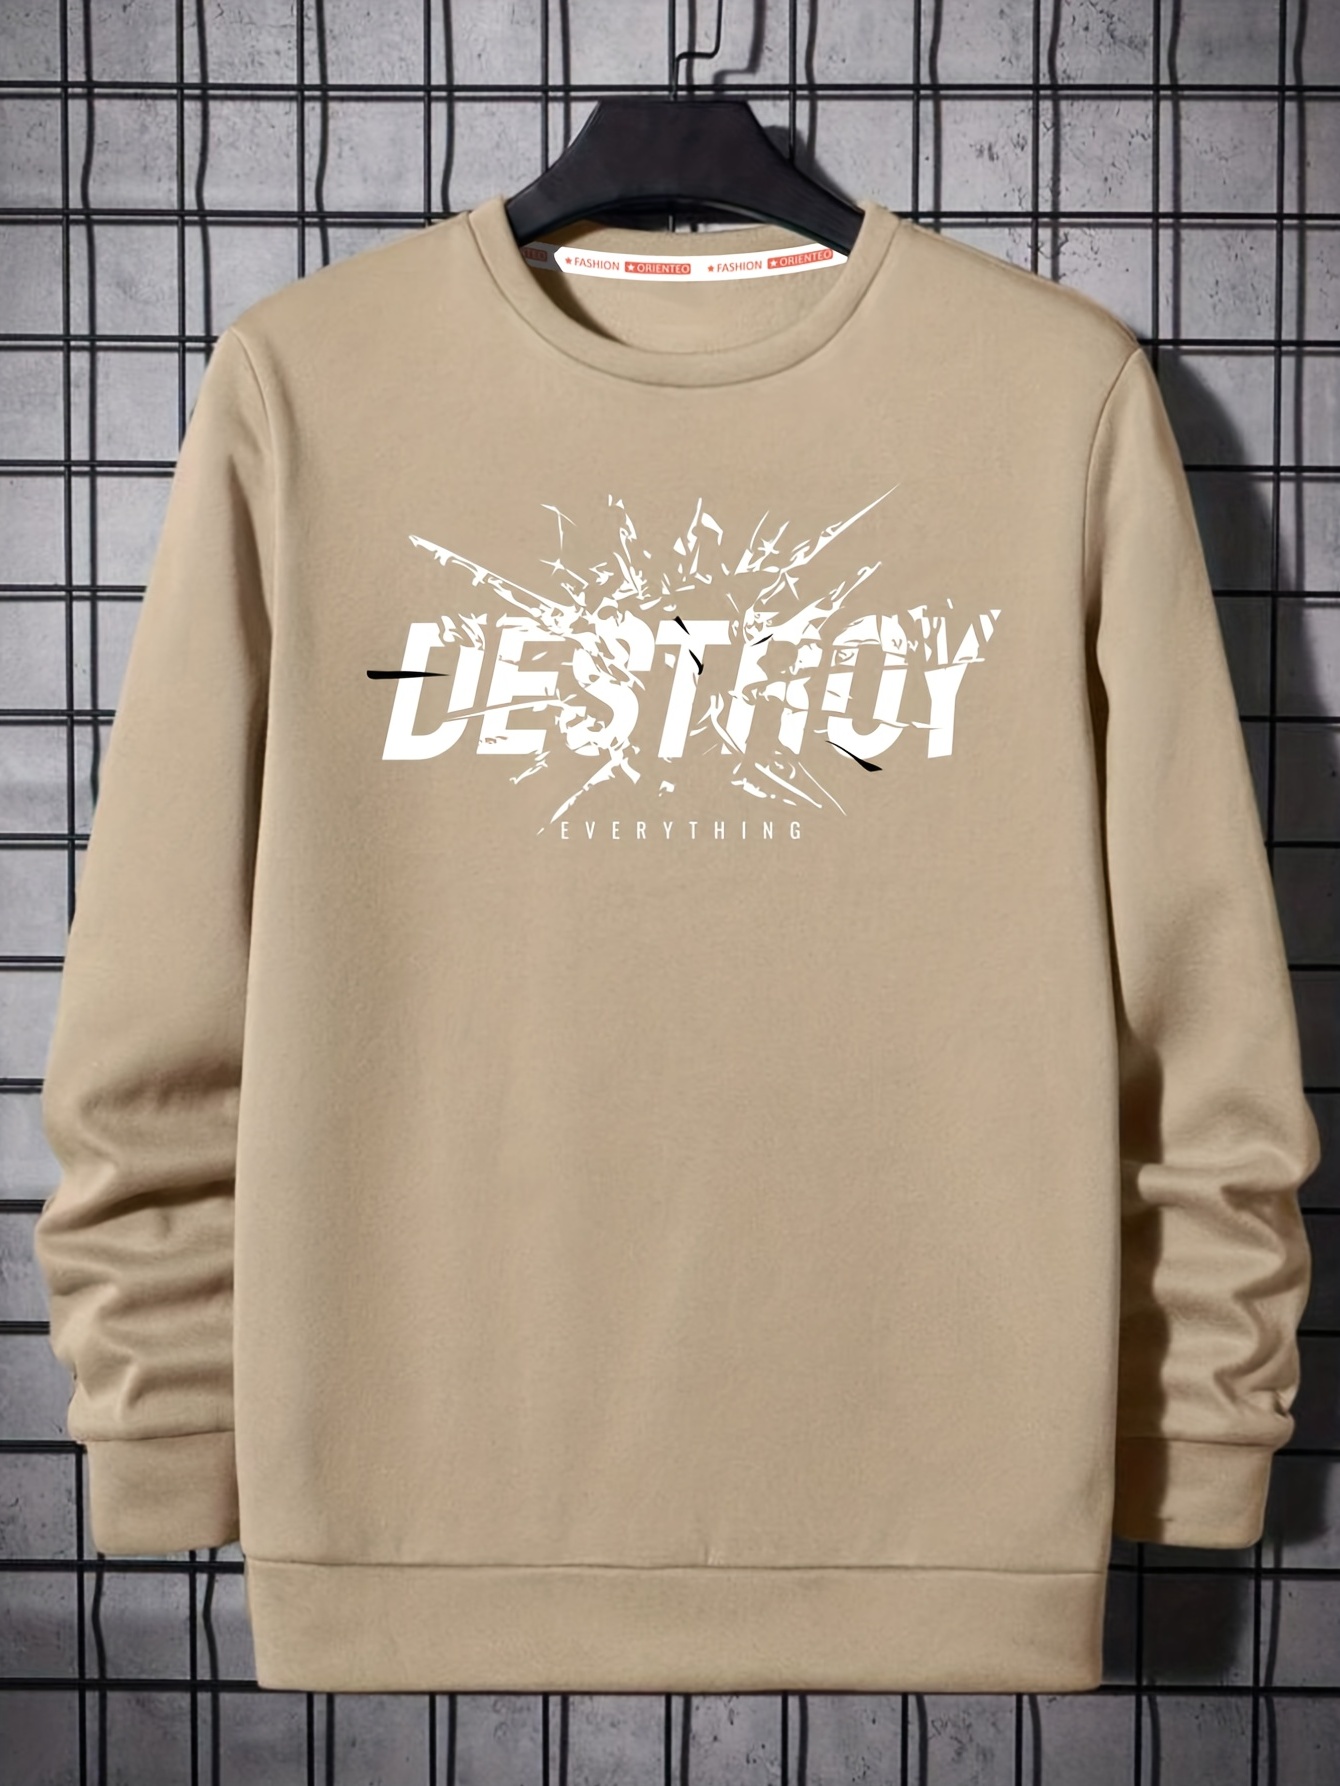 Destroy Print Trendy Sweatshirt, Men's Casual Graphic Design